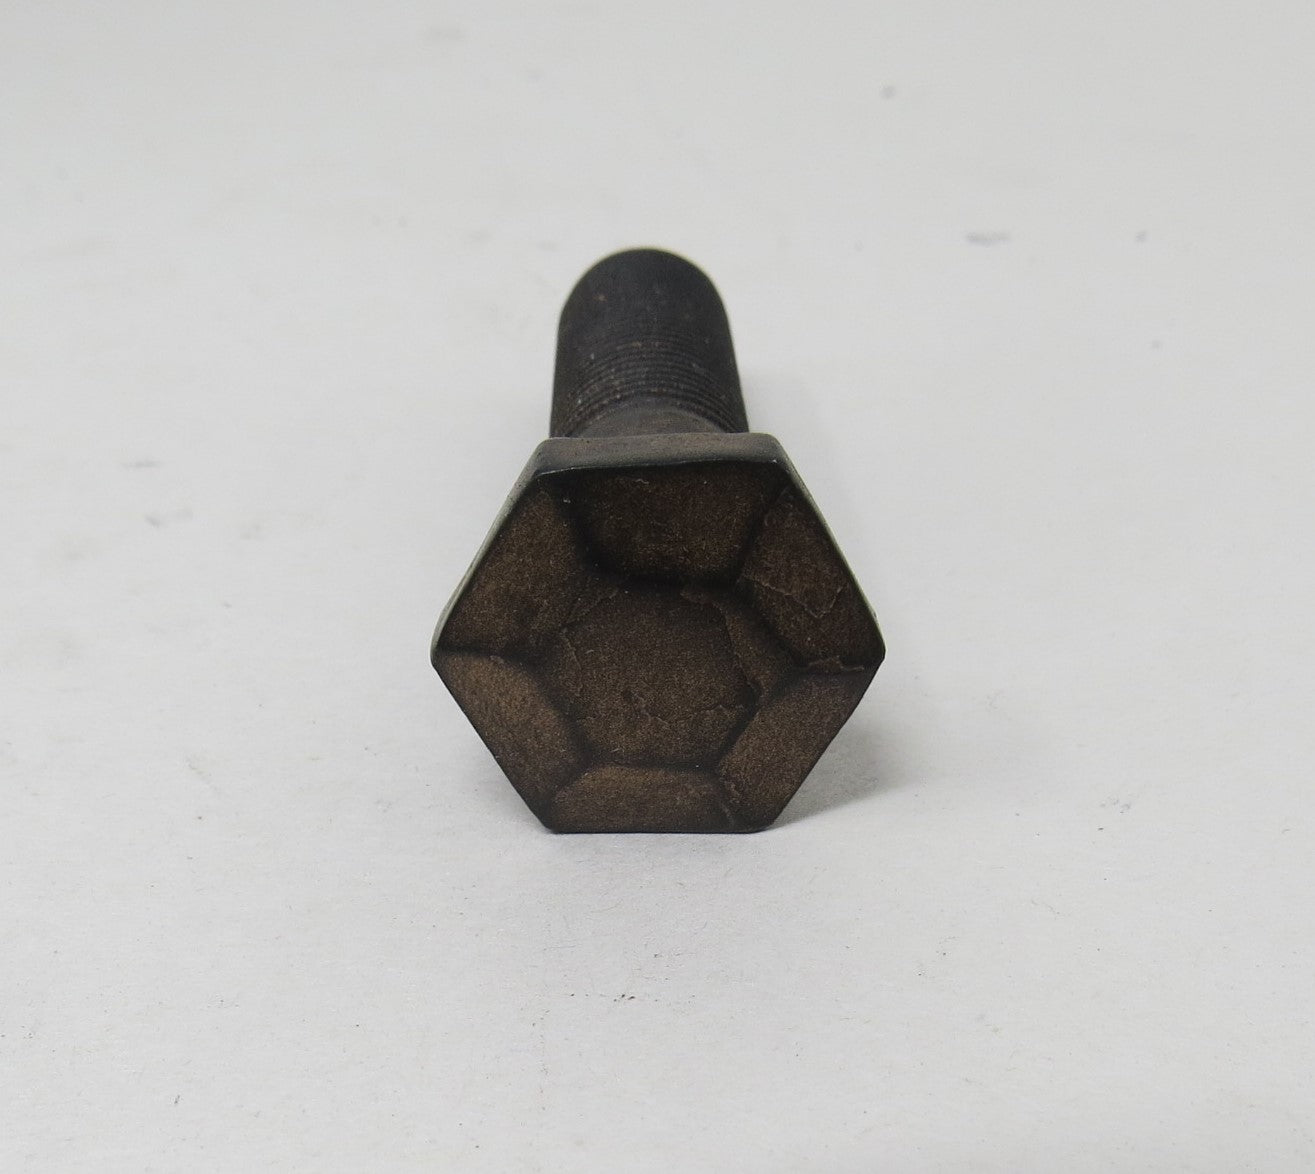 Tirafondo de cabeza hexagonal piramidal de 5/16" de diámetro